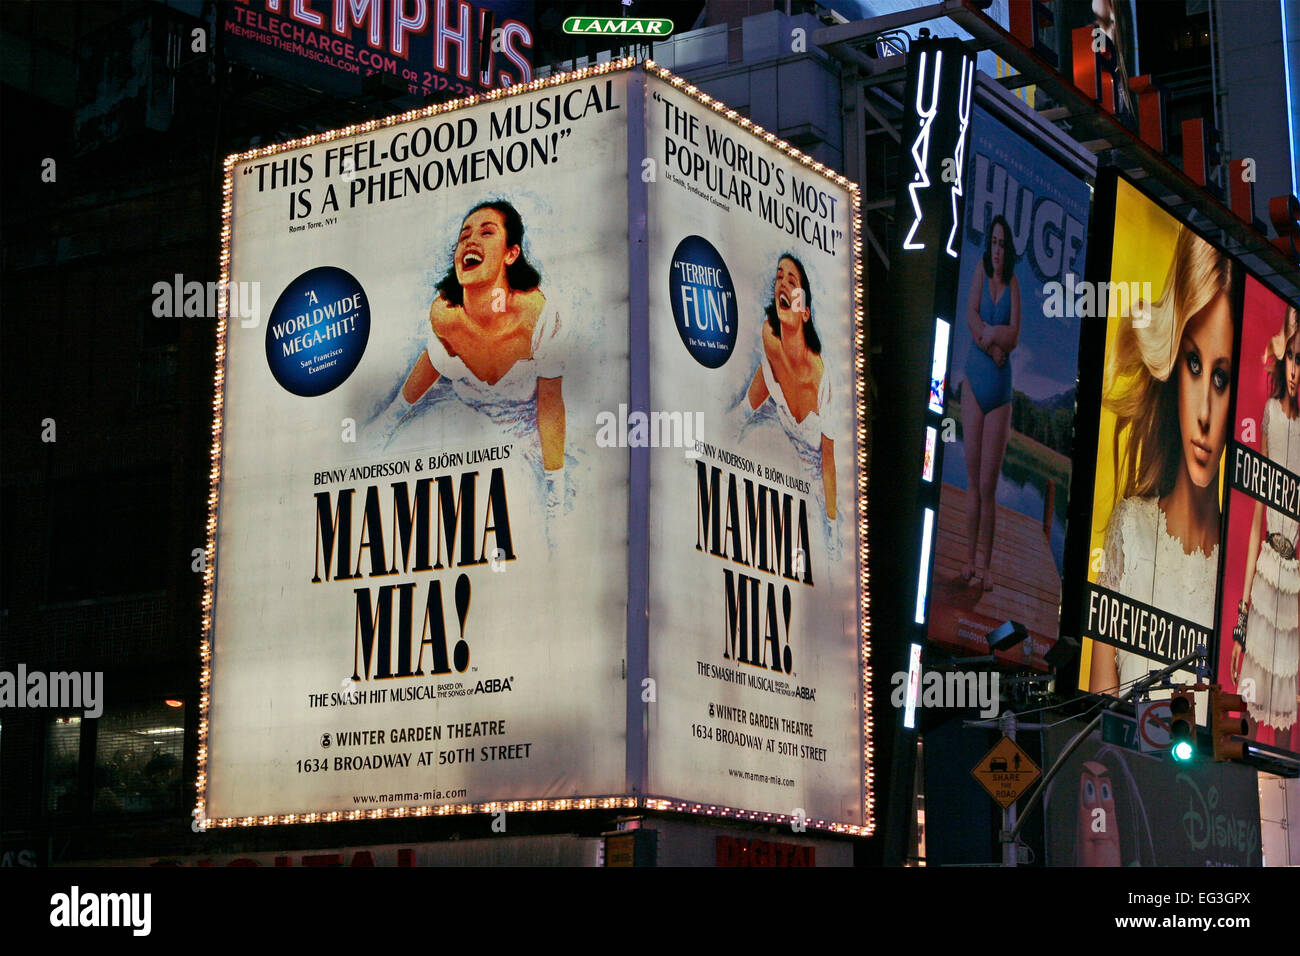 Mamma Mia-Werbetafel, Times Square. Theaterviertel bei Nacht. Manhattan. New York City, NYC, NY, Vereinigte Staaten von Amerika, USA bhz Stockfoto